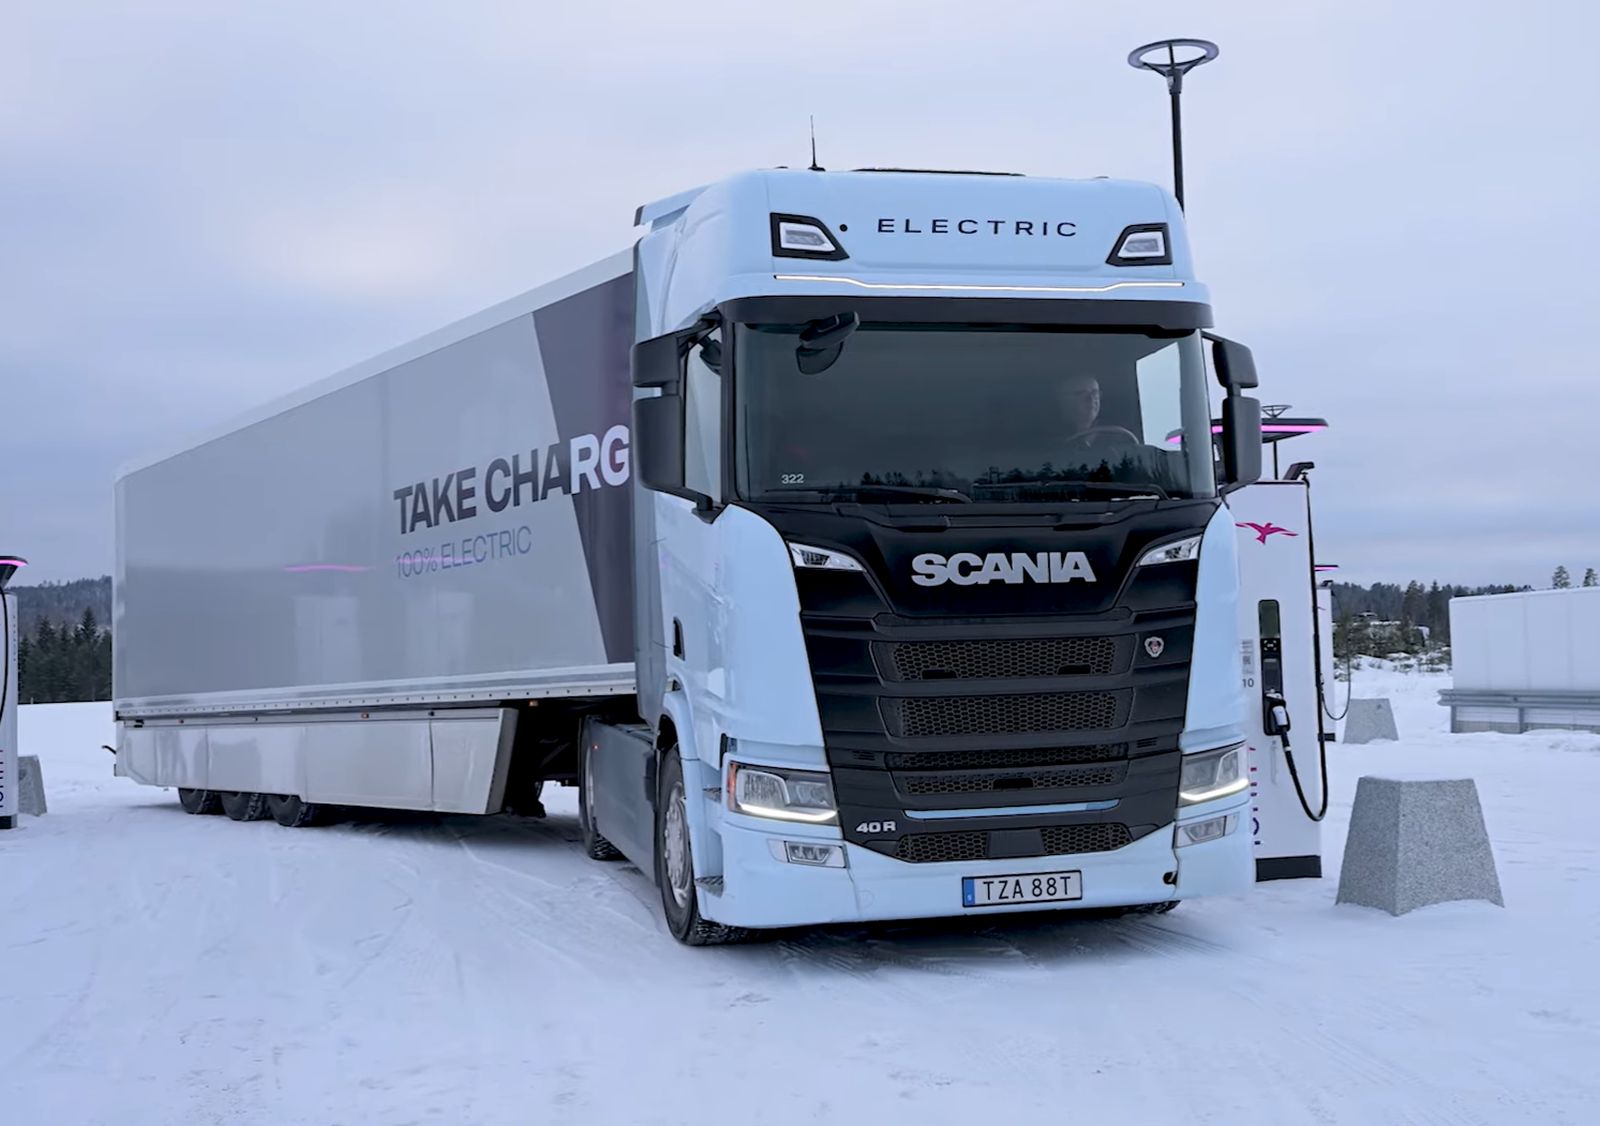 Električna Scania 40 R bez problema odradila putovanje od 550 km na debelom minusu 25